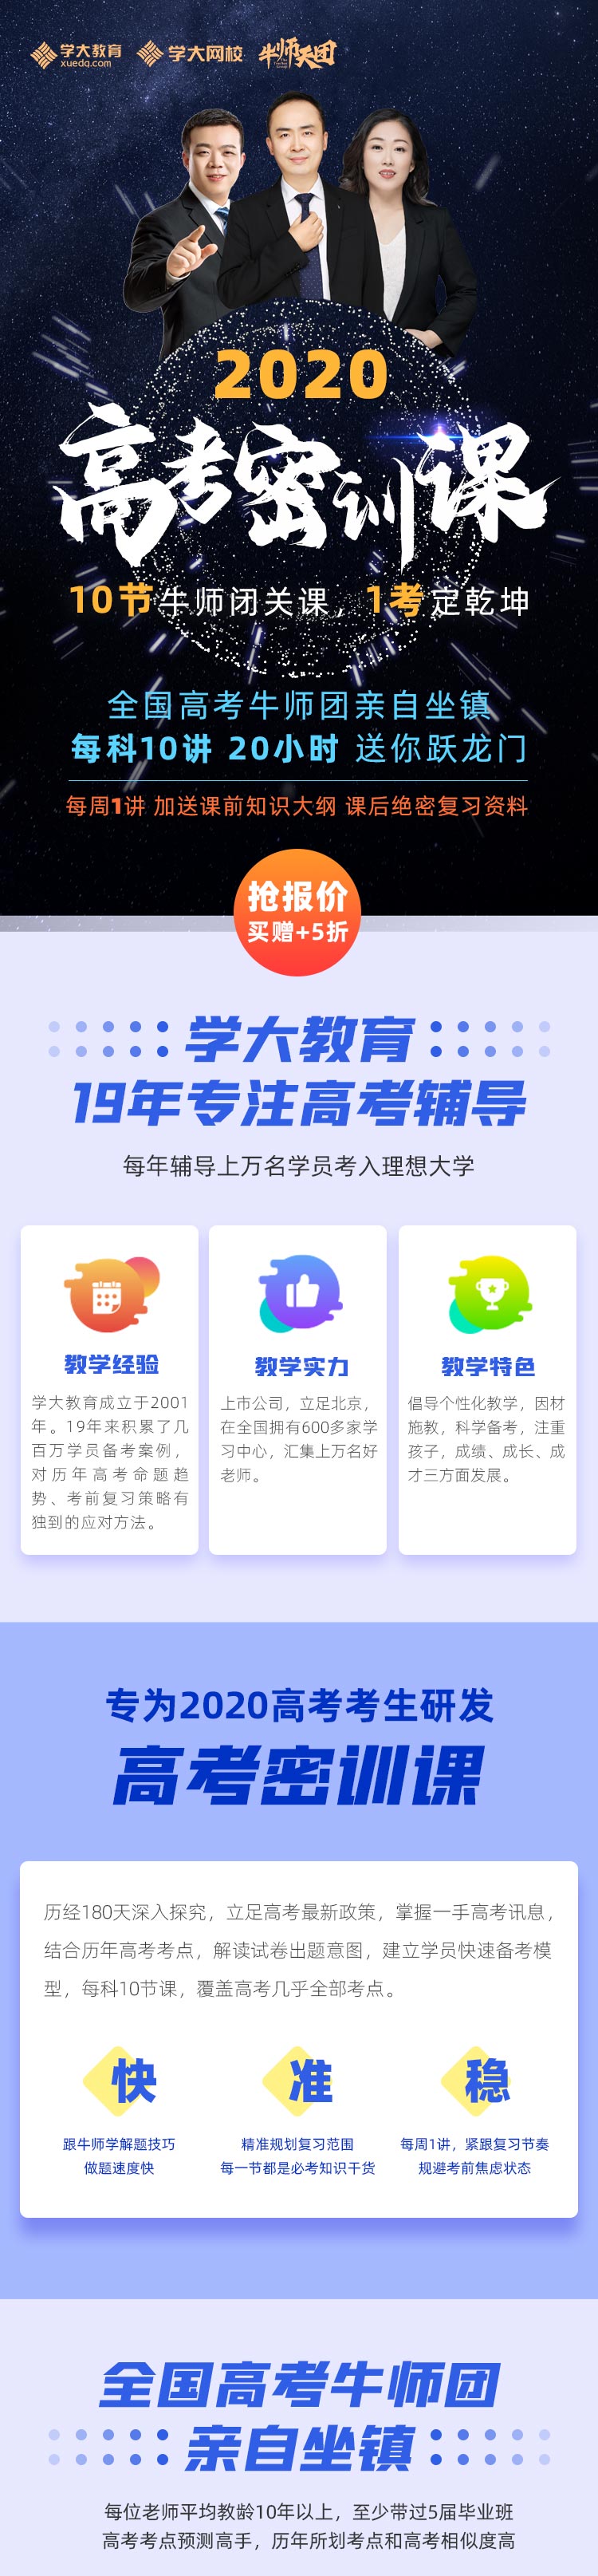 https://xdo-storage.oss-cn-beijing.aliyuncs.com/2020/03/09/RNtGkGq7E4uQcbUv5uJlr3RuAiclrwOcDJLyQ9vl.jpeg